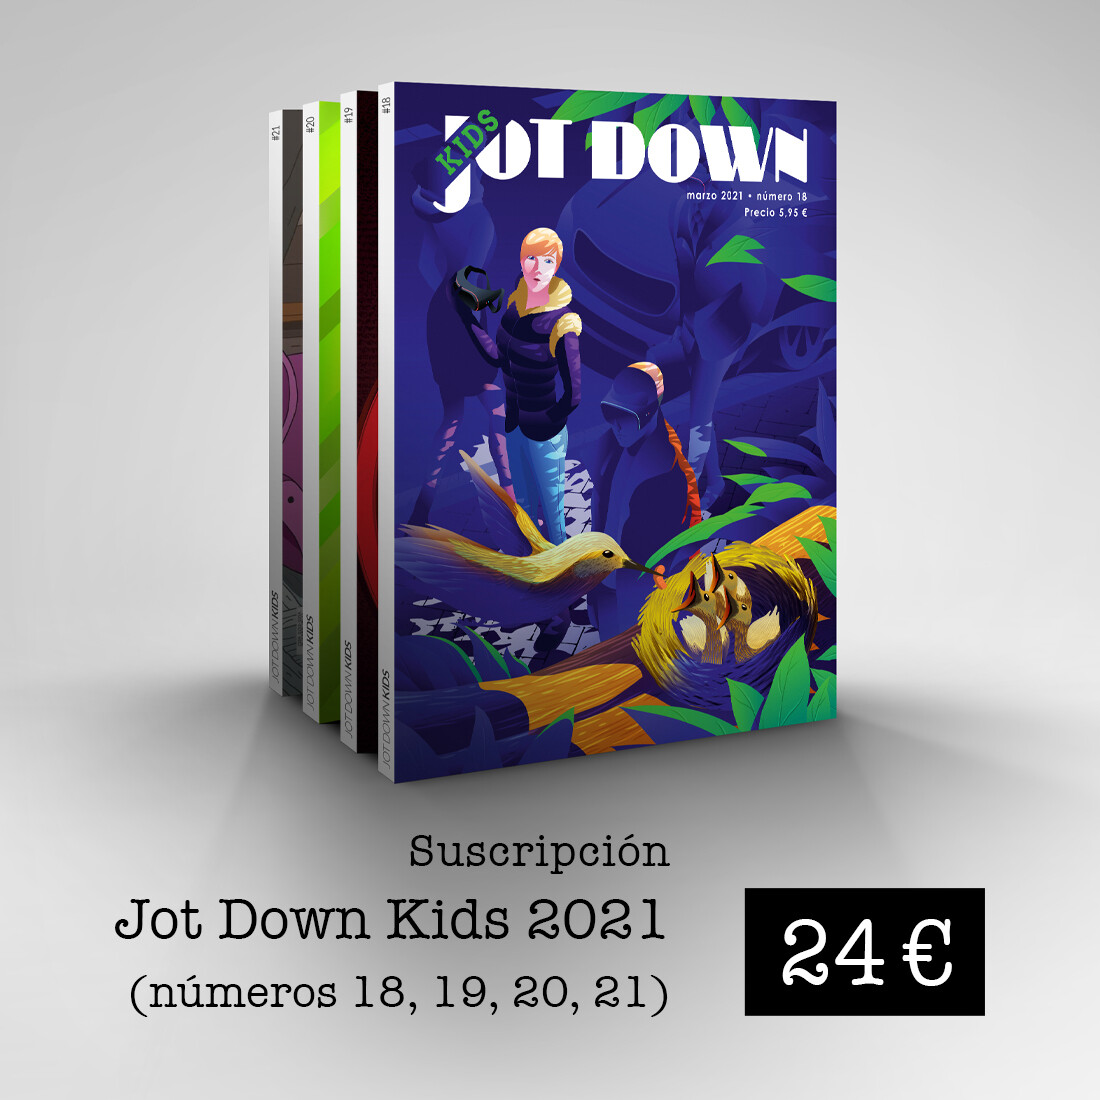 Suscripción Jot Down Kids 2021 (nº18 al nº 21)